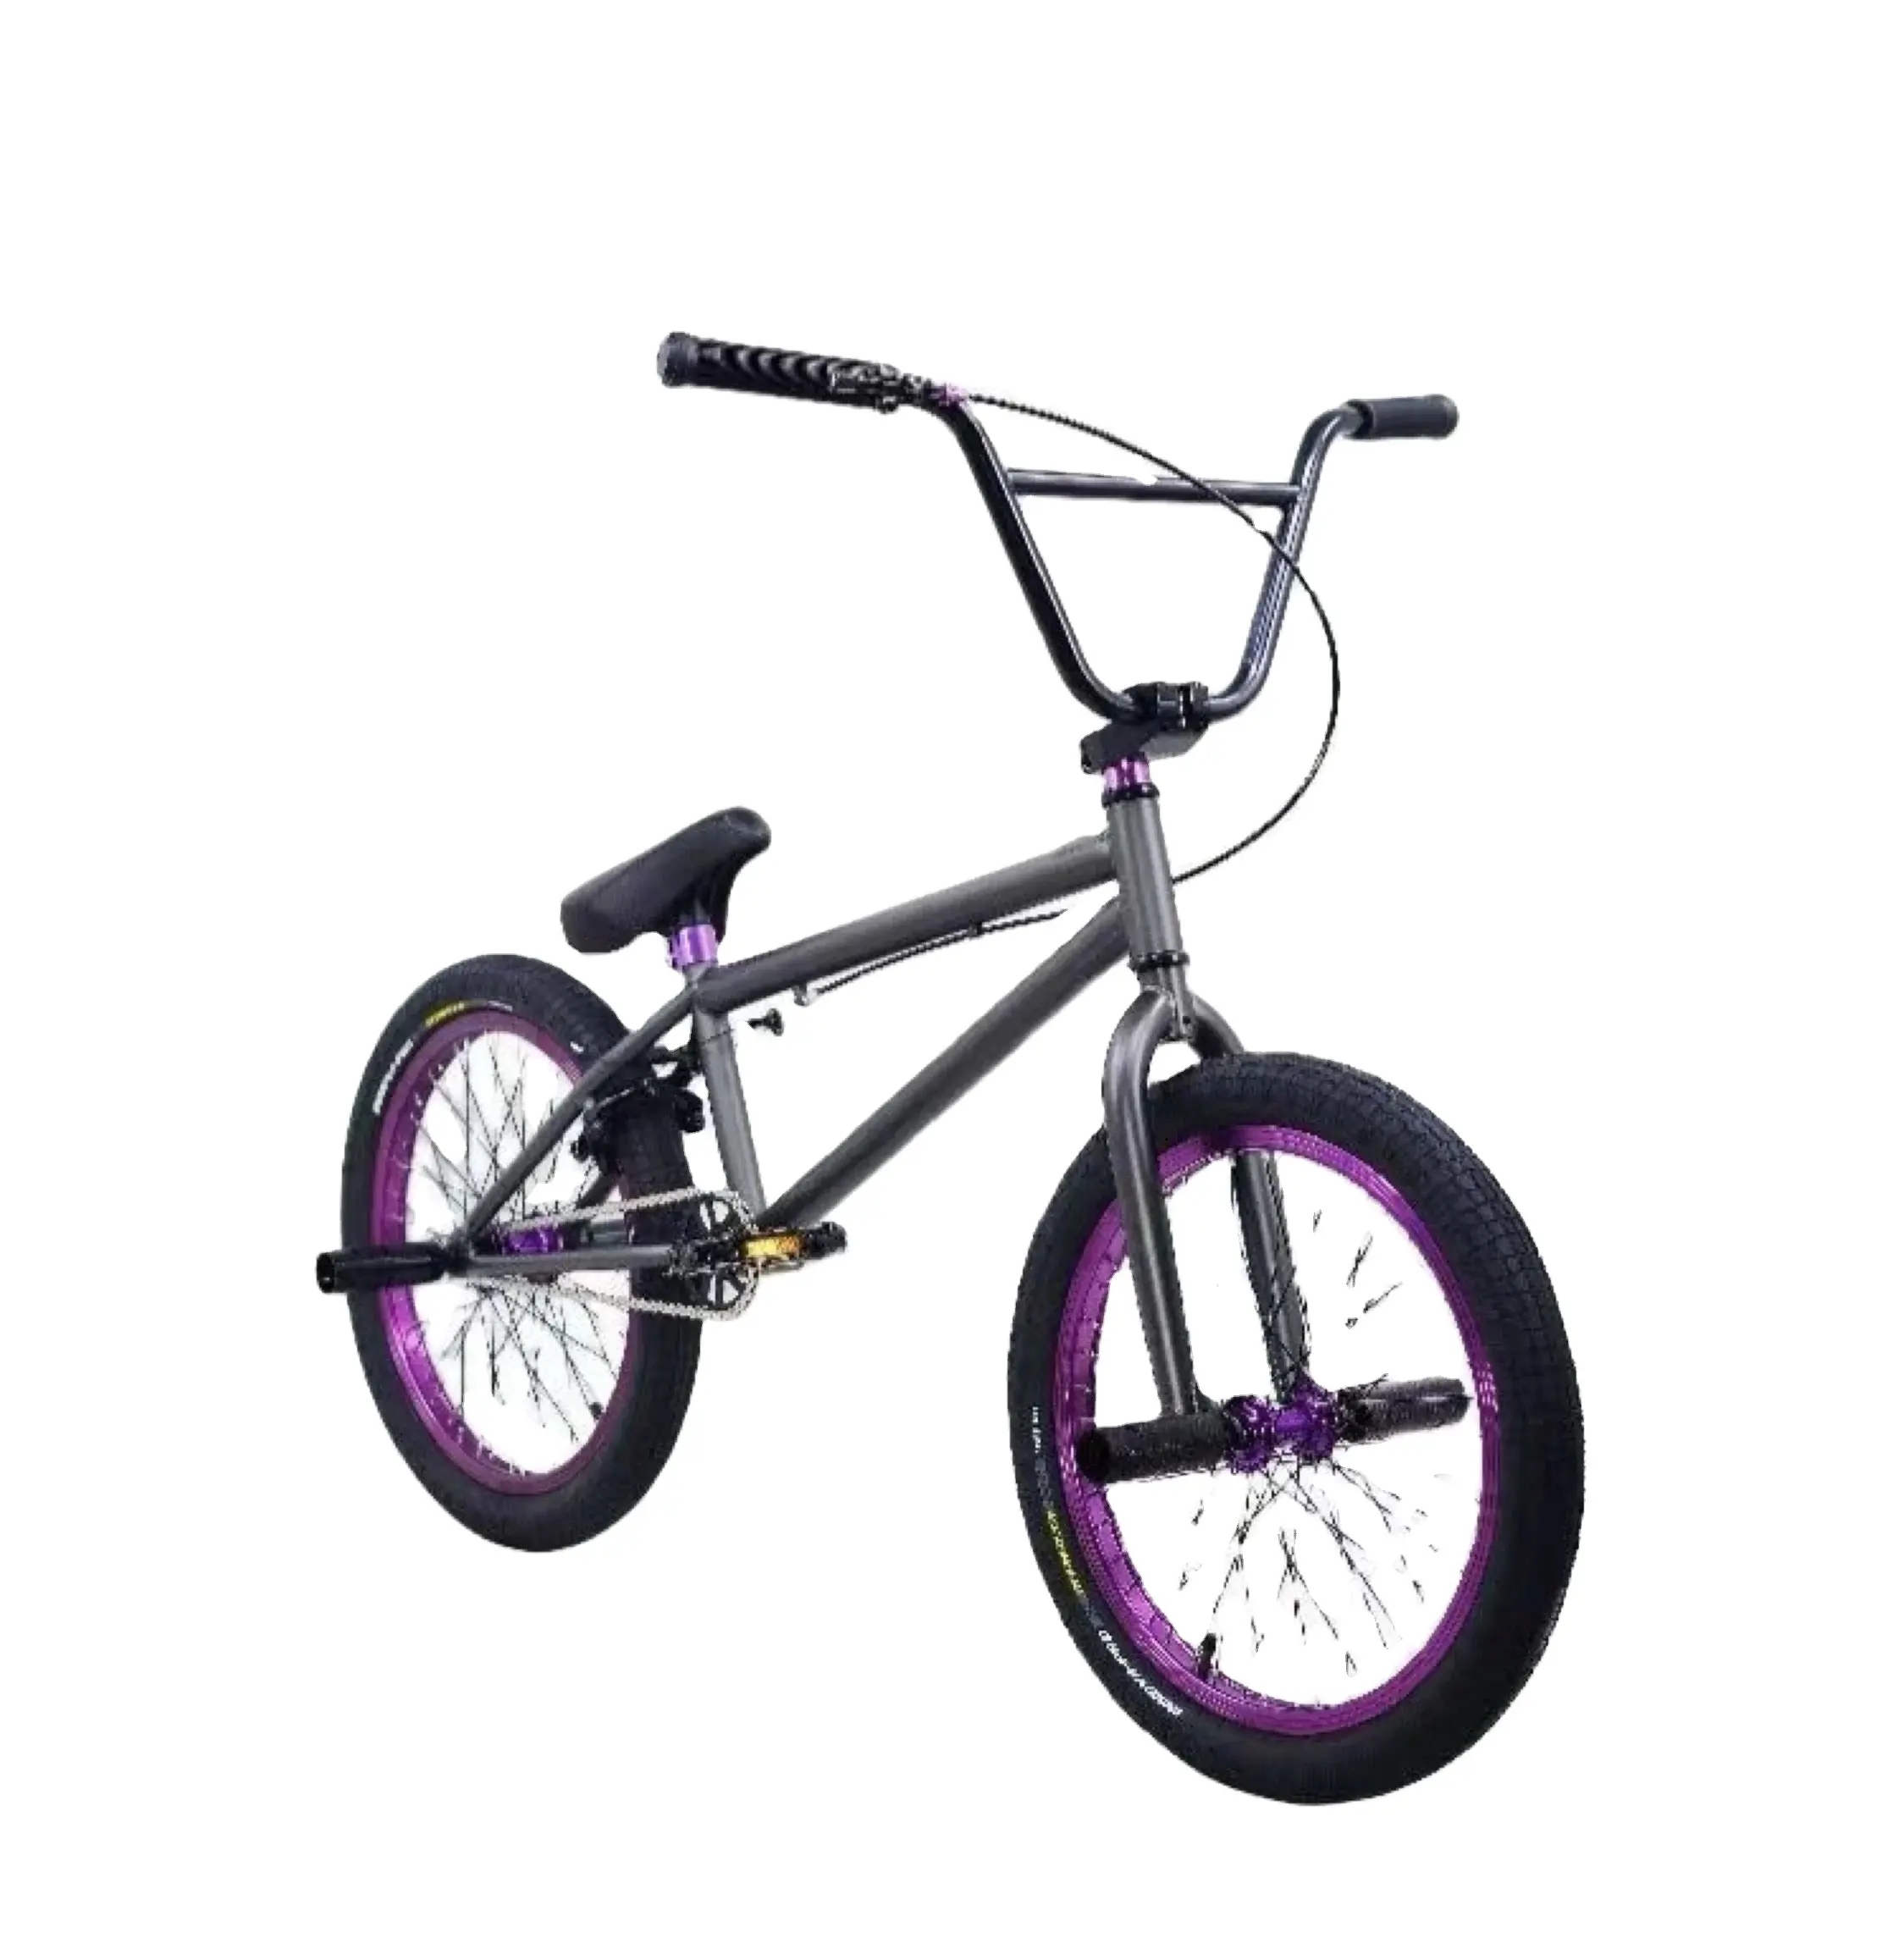 Цветной масляный трюк bmx chromoly bike, велосипед bicicleta bmx 20 дюймов, велосипед для фристайла